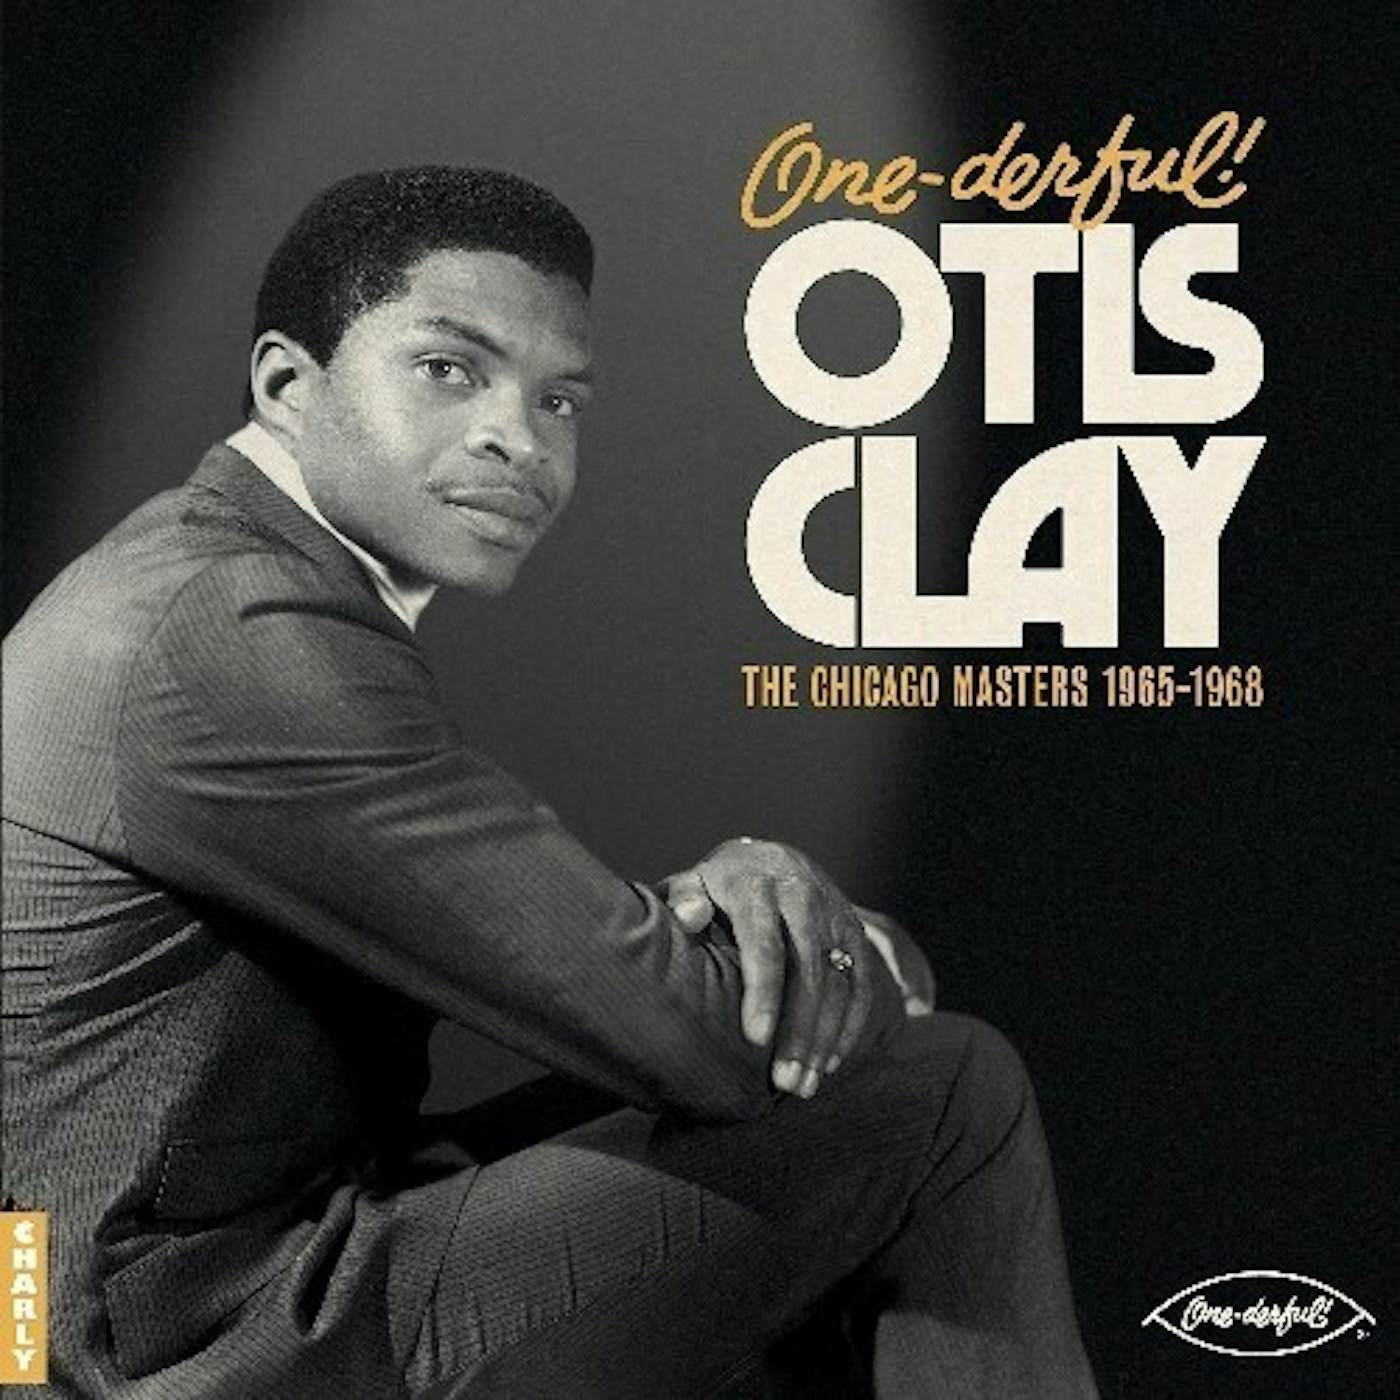 ONE-DERFUL OTIS OTIS CLAY: THE CHIACGO MASTERS Vinyl Record